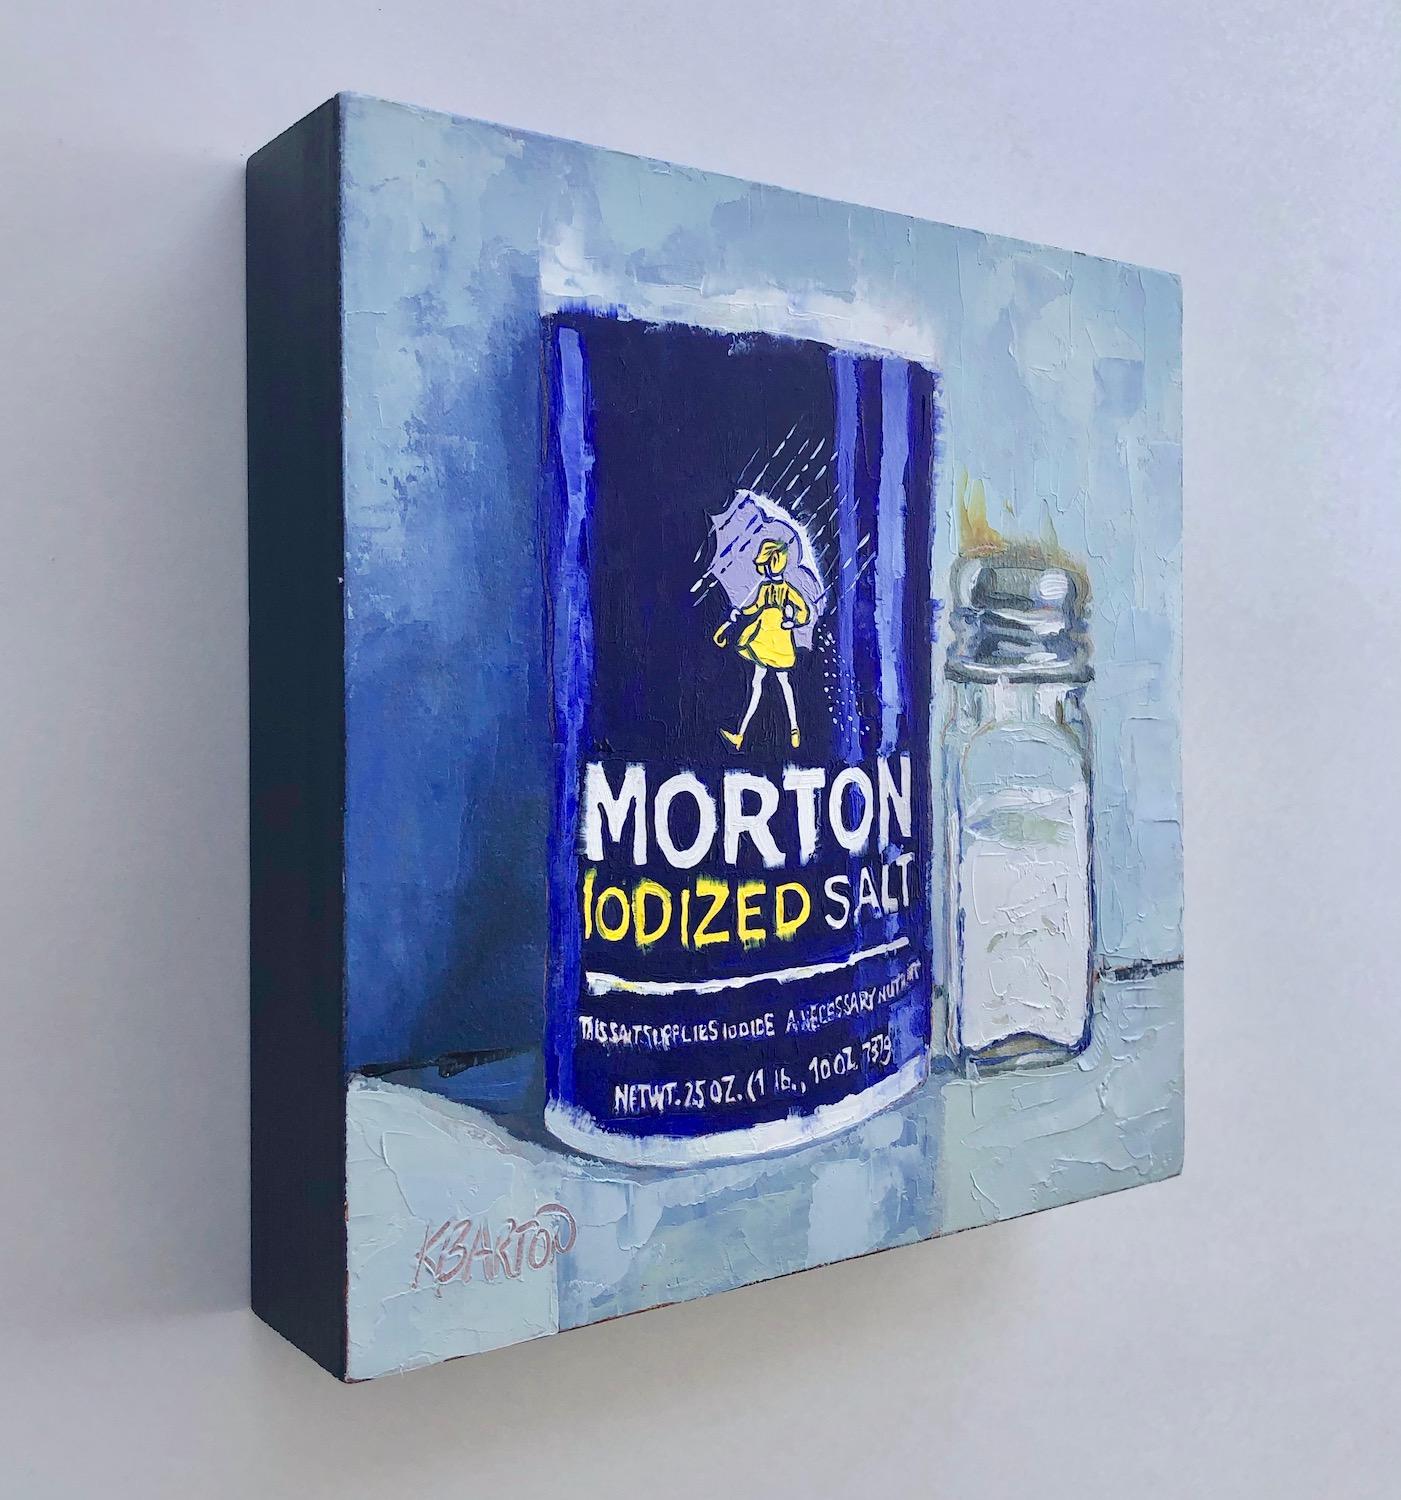 Two Salts - Pop Art Art by Karen Barton